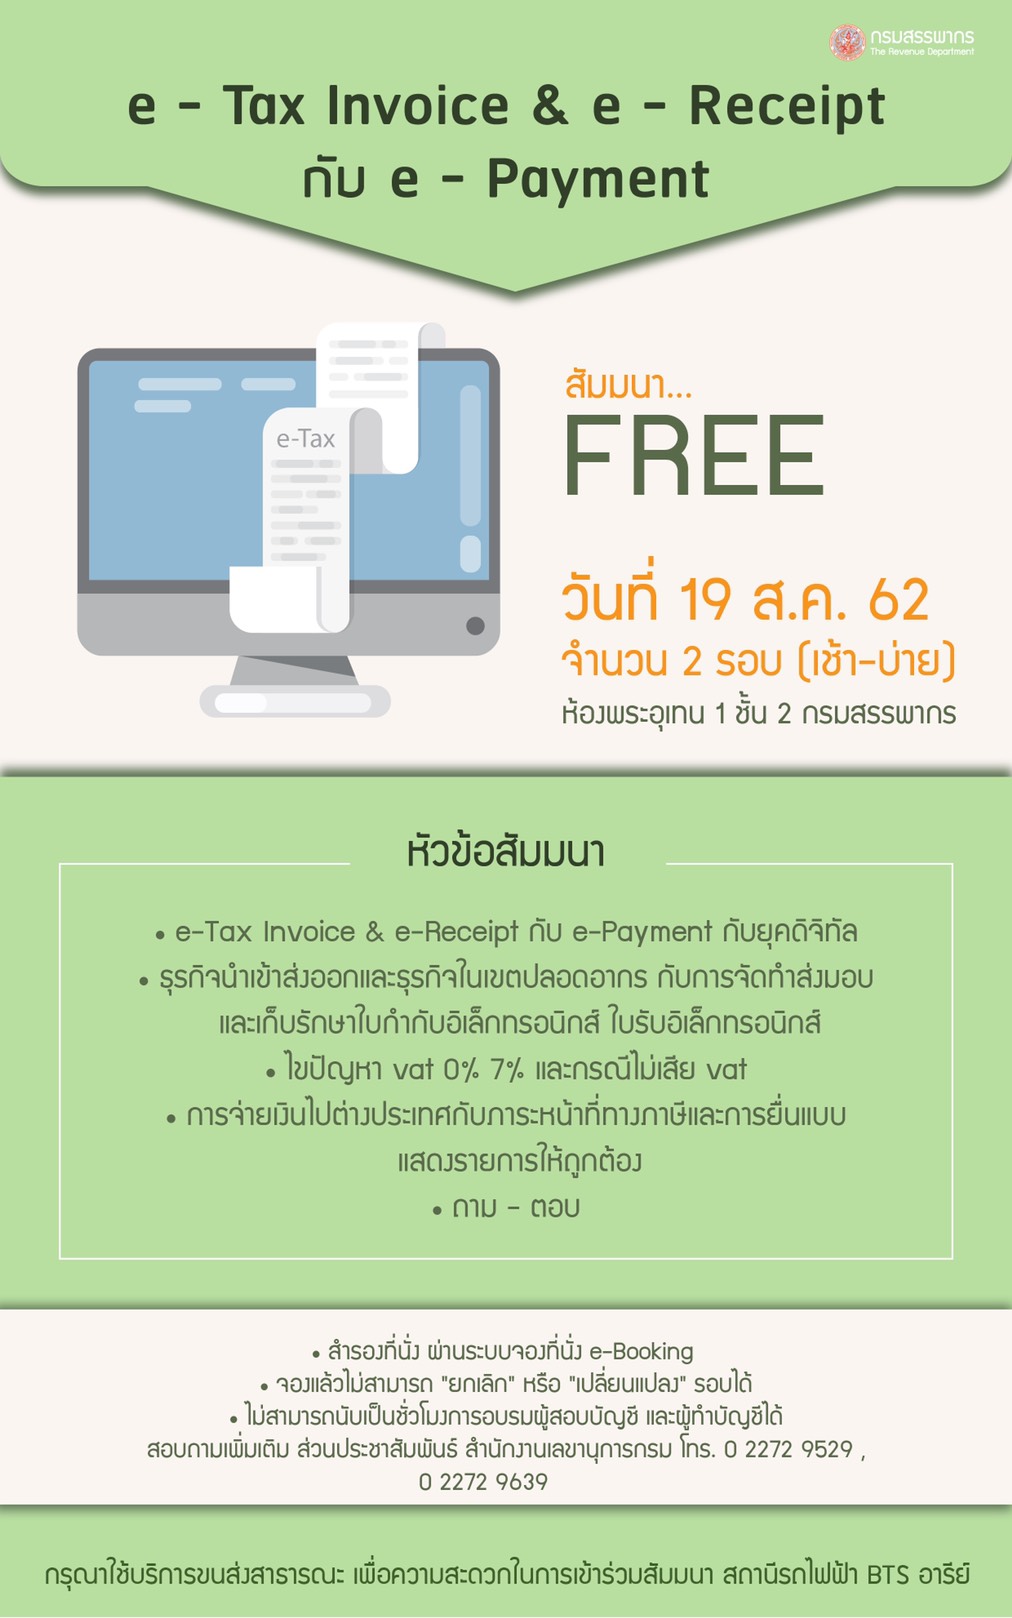 e-Tax Invoice & e-Receipt กับ e-Payment